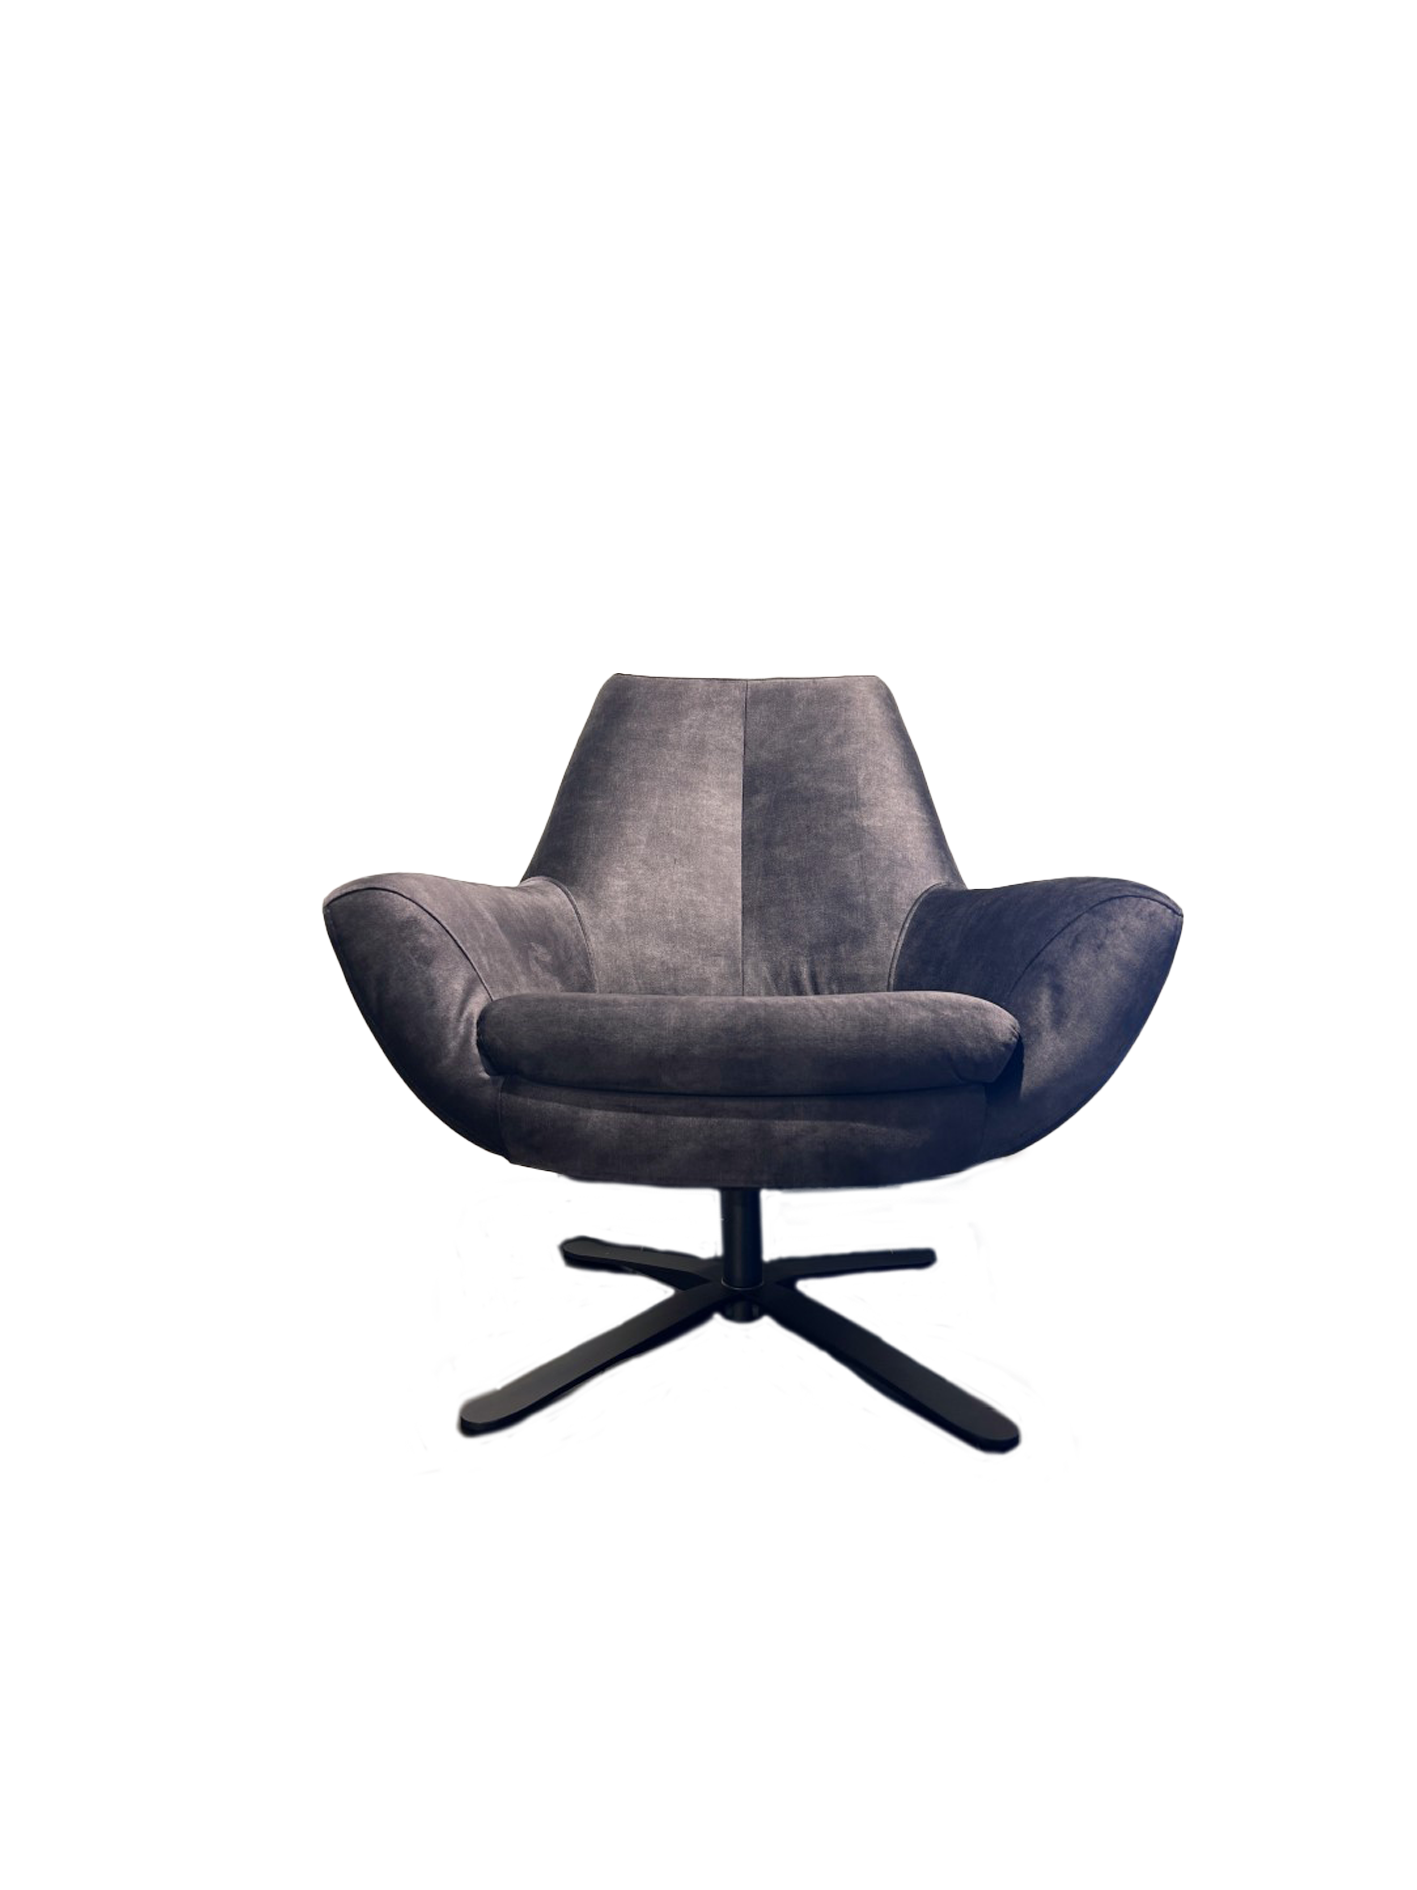 Productafbeelding van Montèl fauteuil Charles low + hocker